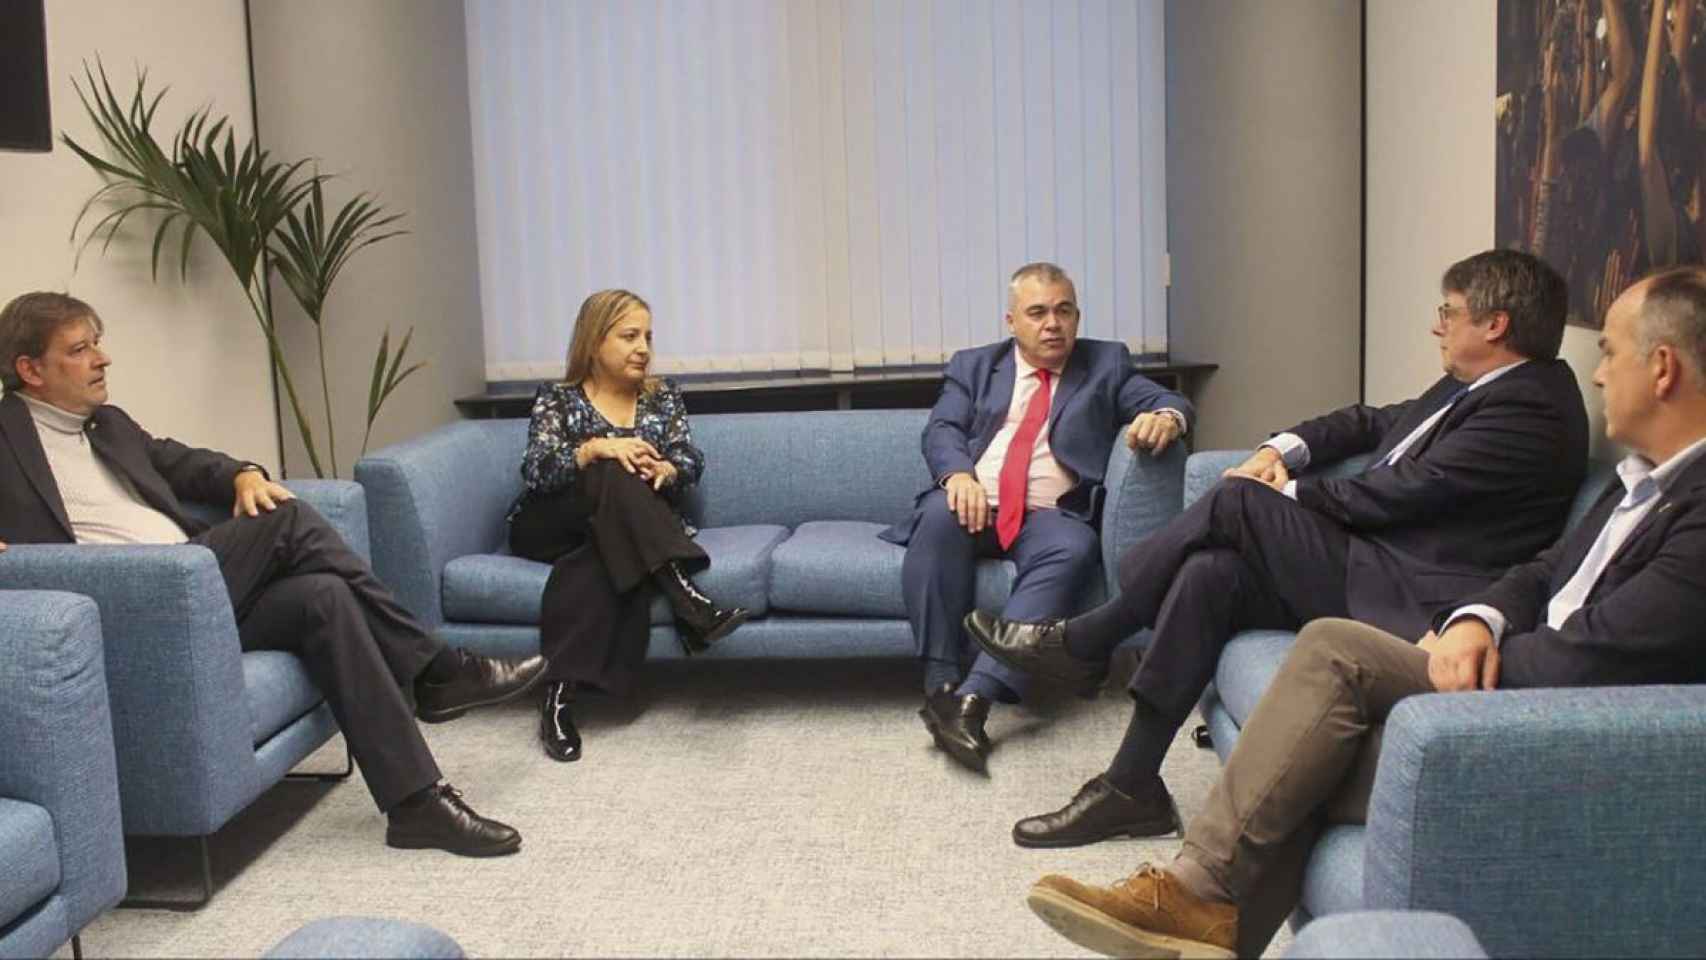 Santos Cerdán y Puigdemont, reunidos en Waterloo, junto a otros miembros del PSOE y JxCAT.